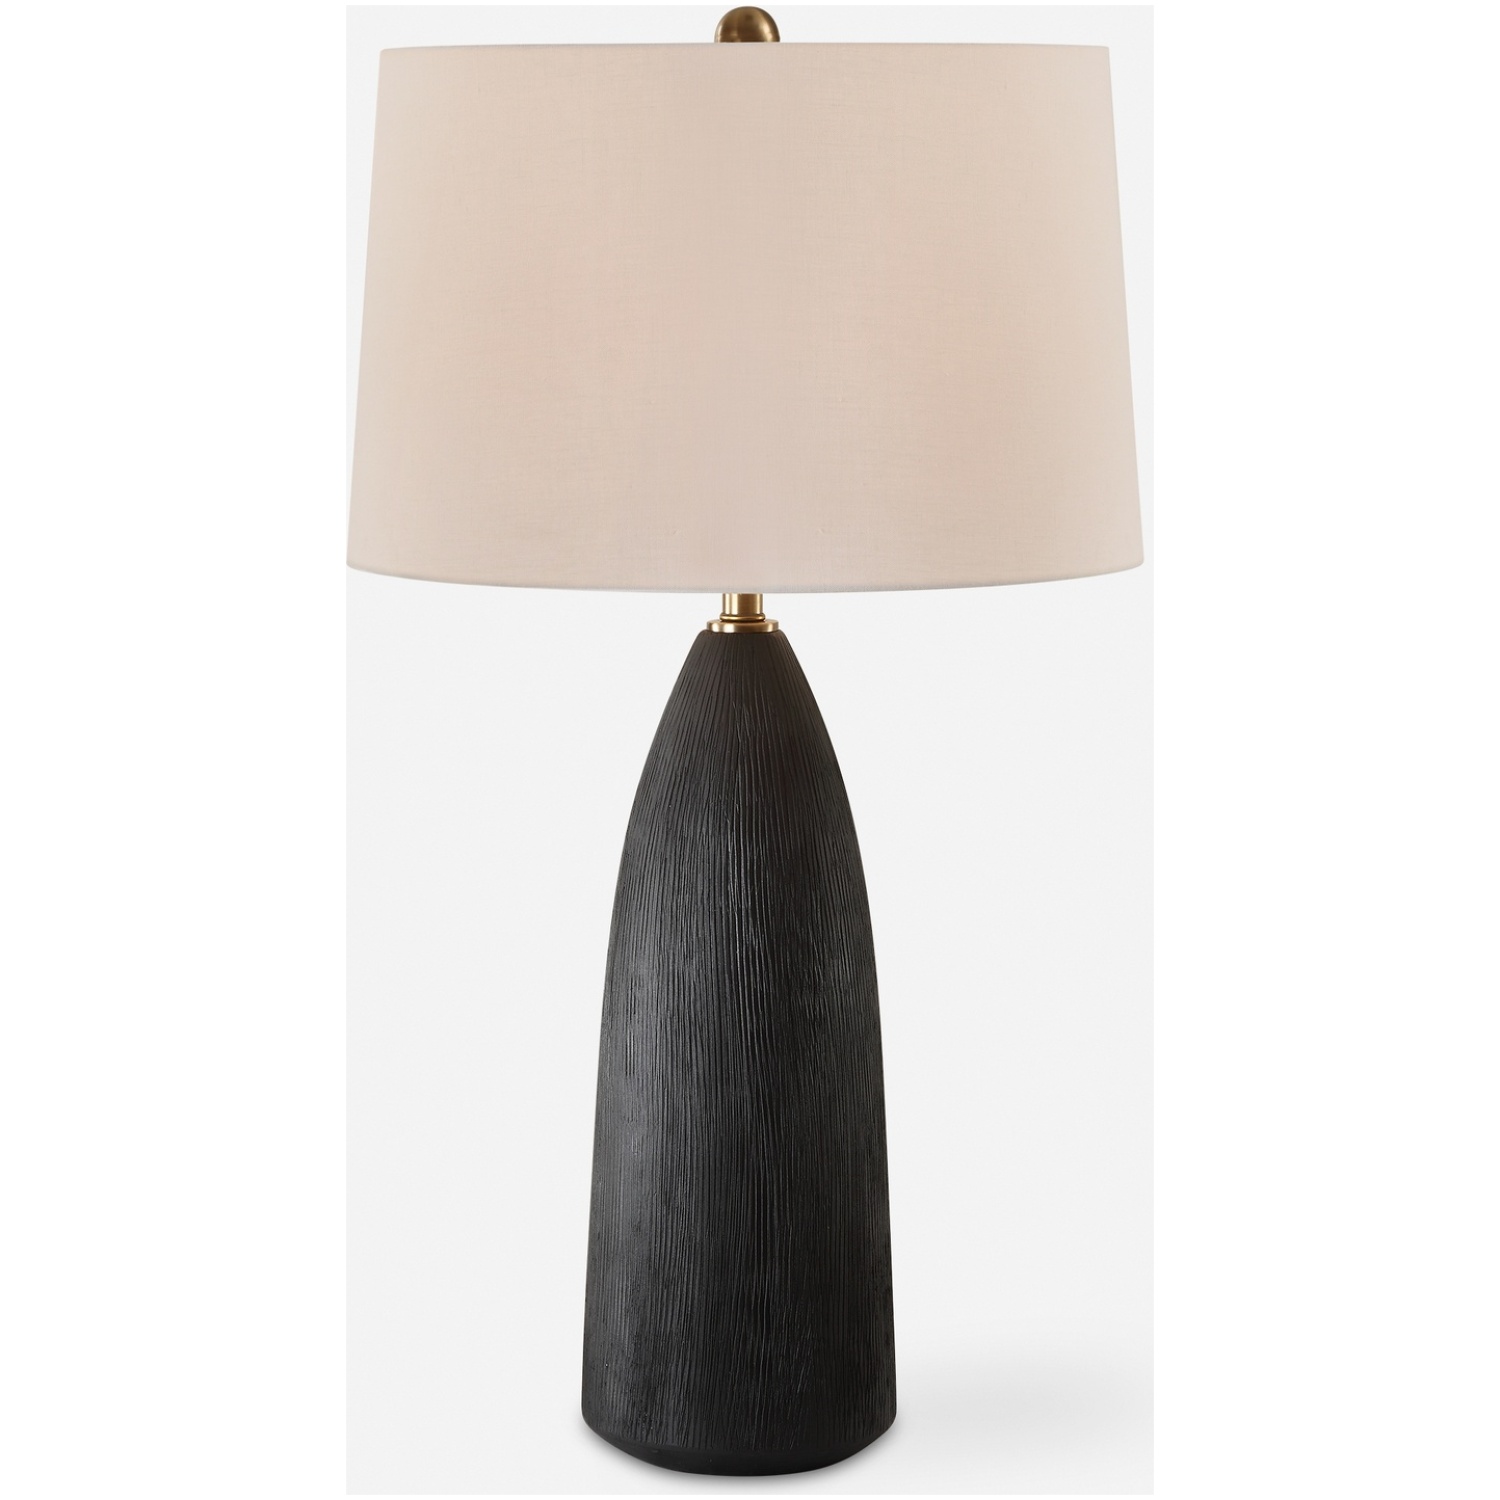 Jett-Black Table Lamp